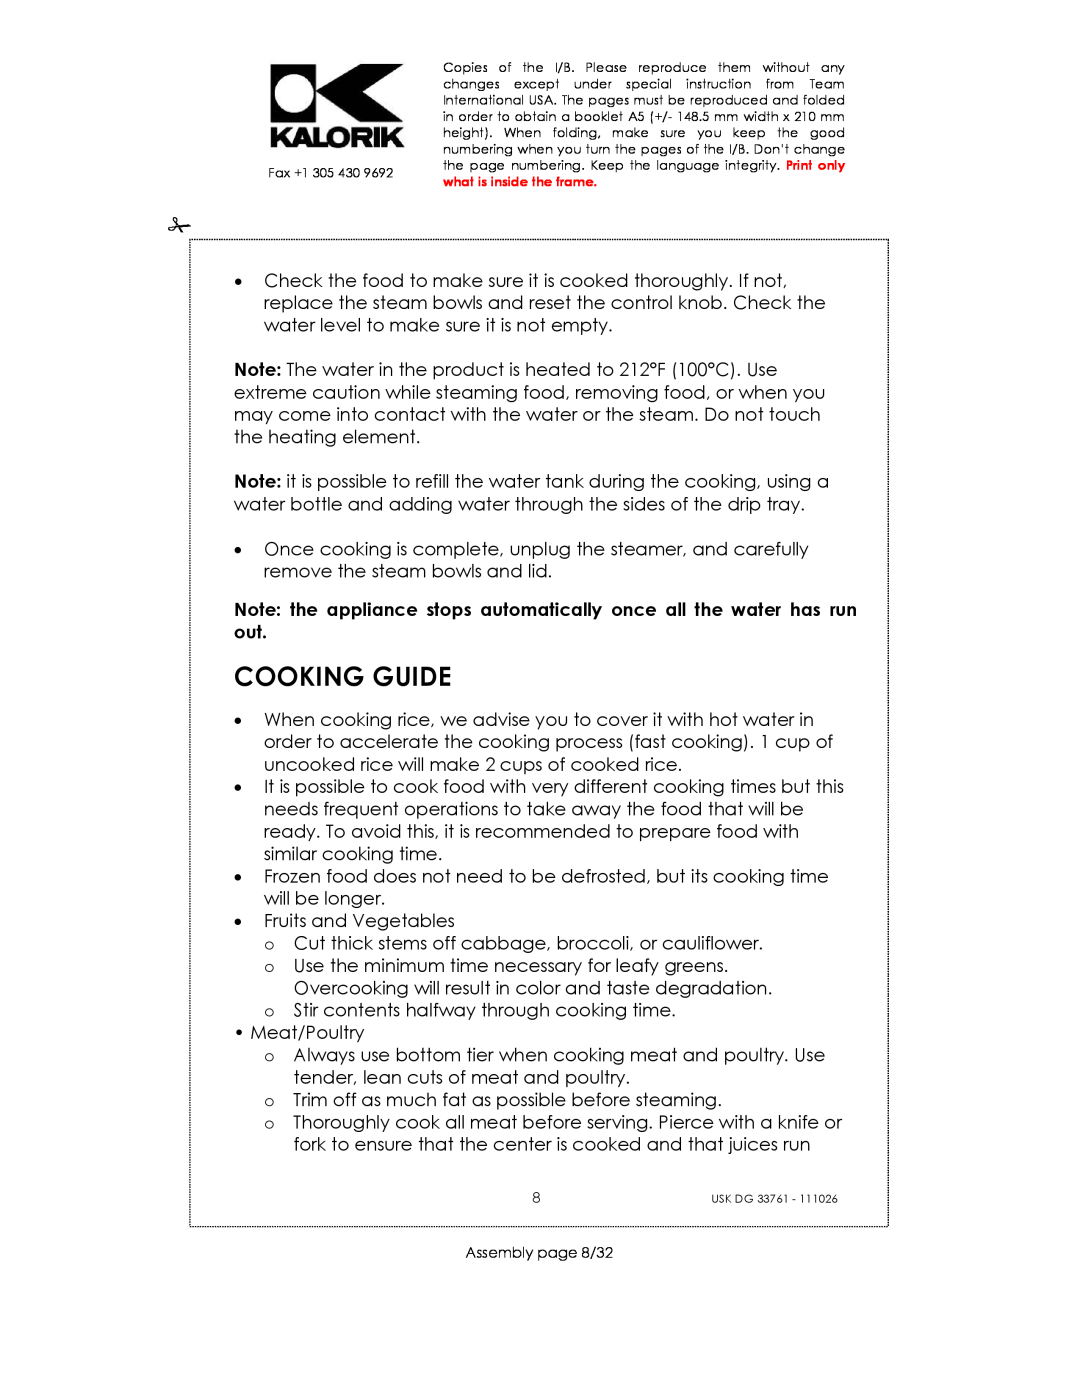 Kalorik USK DG 33761 manual Cooking Guide 